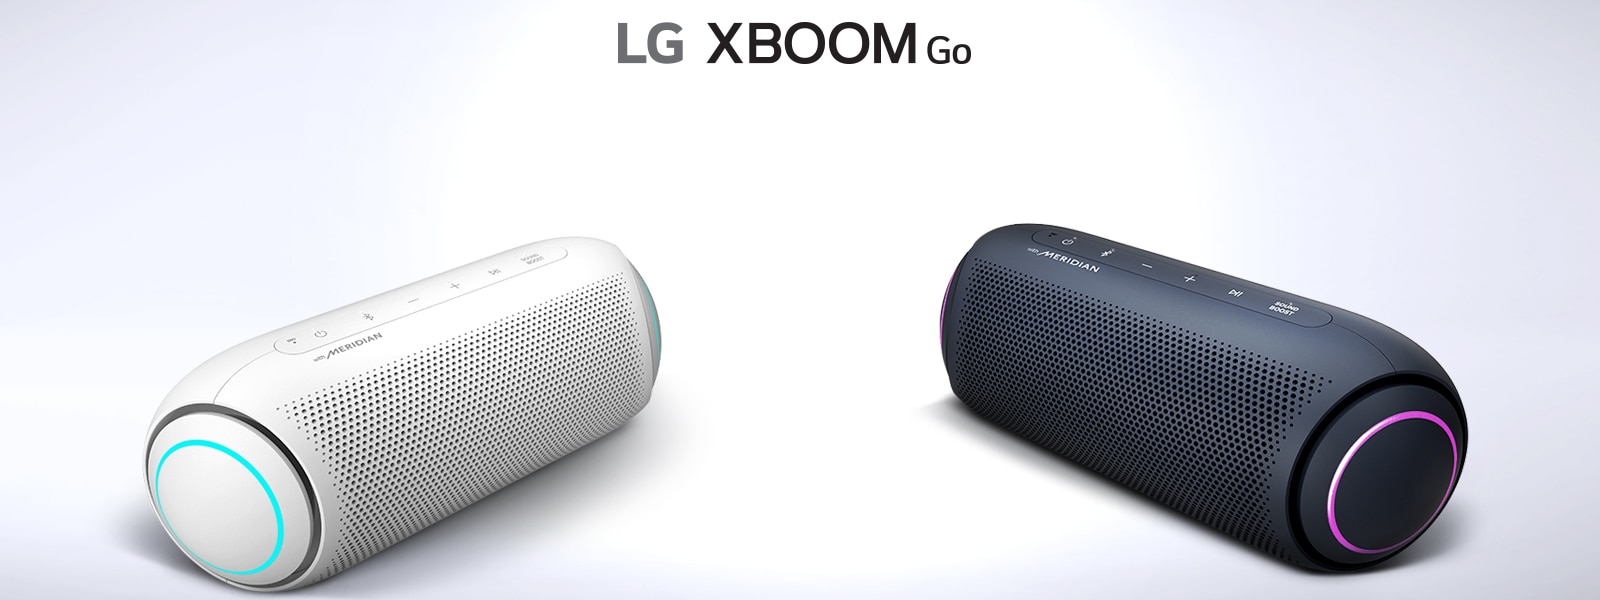 XBOOM LG pl7w динамики. LG XBOOM ol90dk. Портативная колонка LG XBOOM. Аудиосистема LG XBOOM ol90dk. Как включить колонку lg